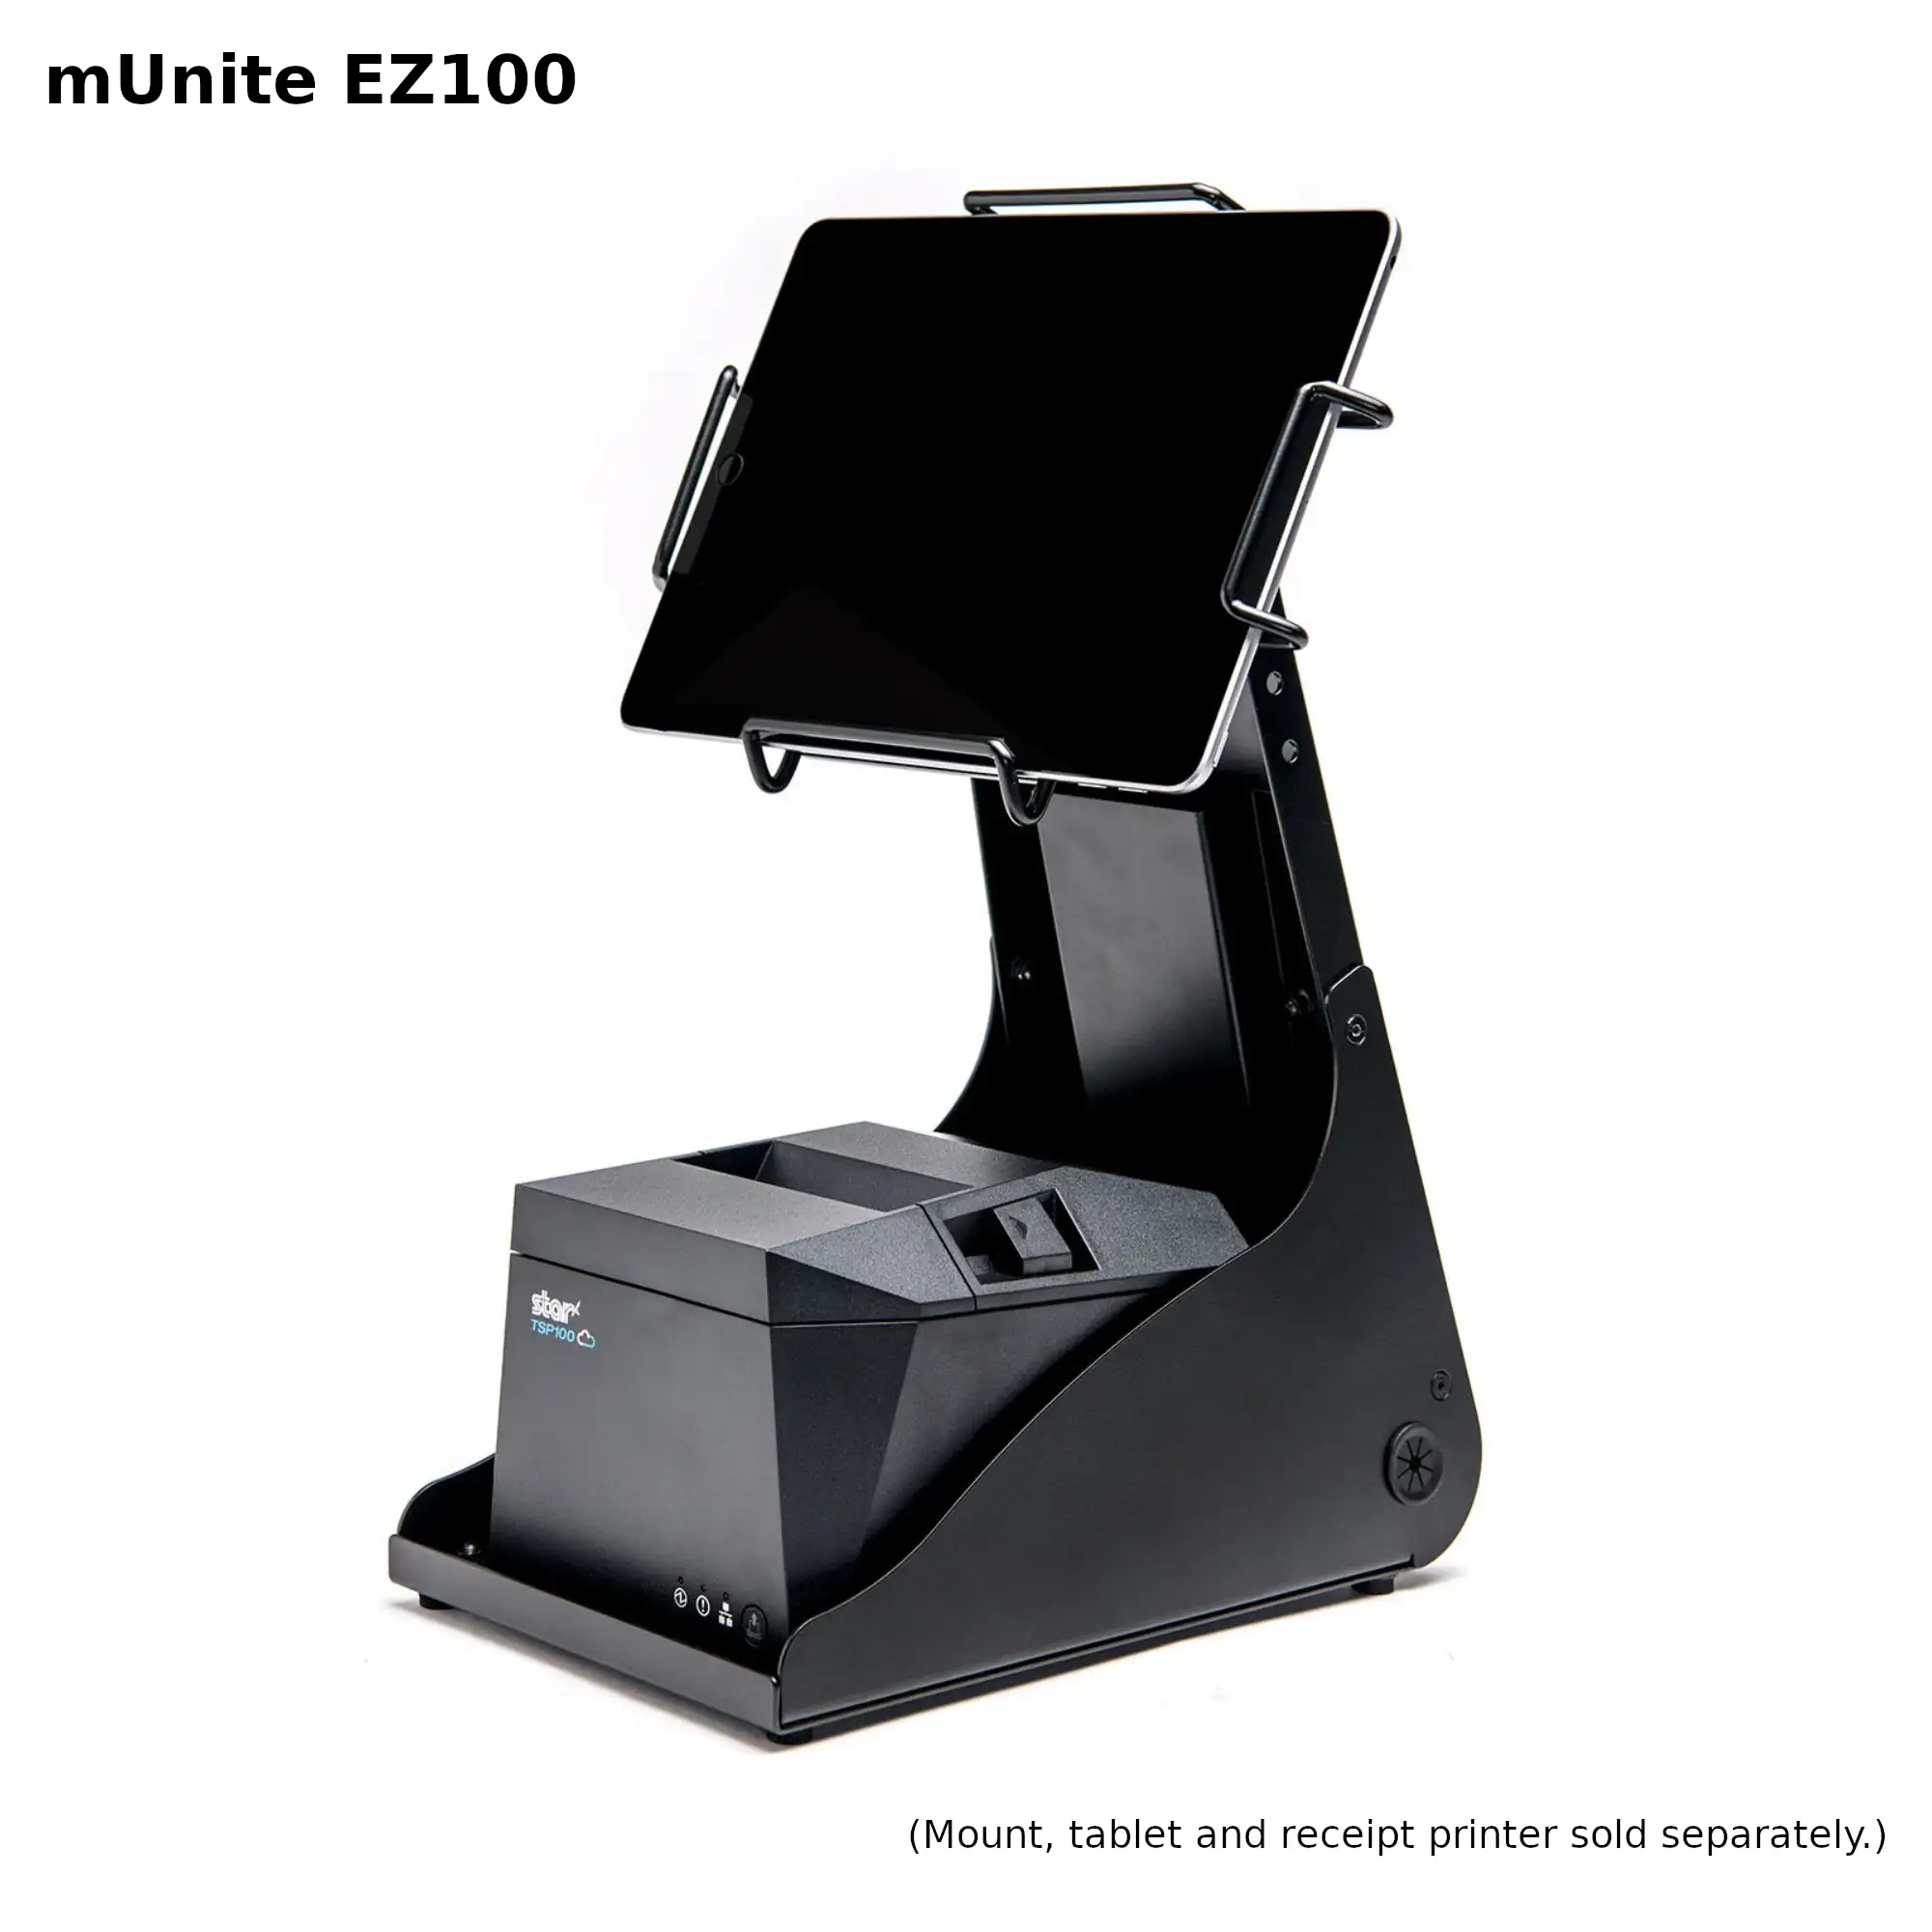 Star Micronics mUniteEZ100 Black Tablet Stand